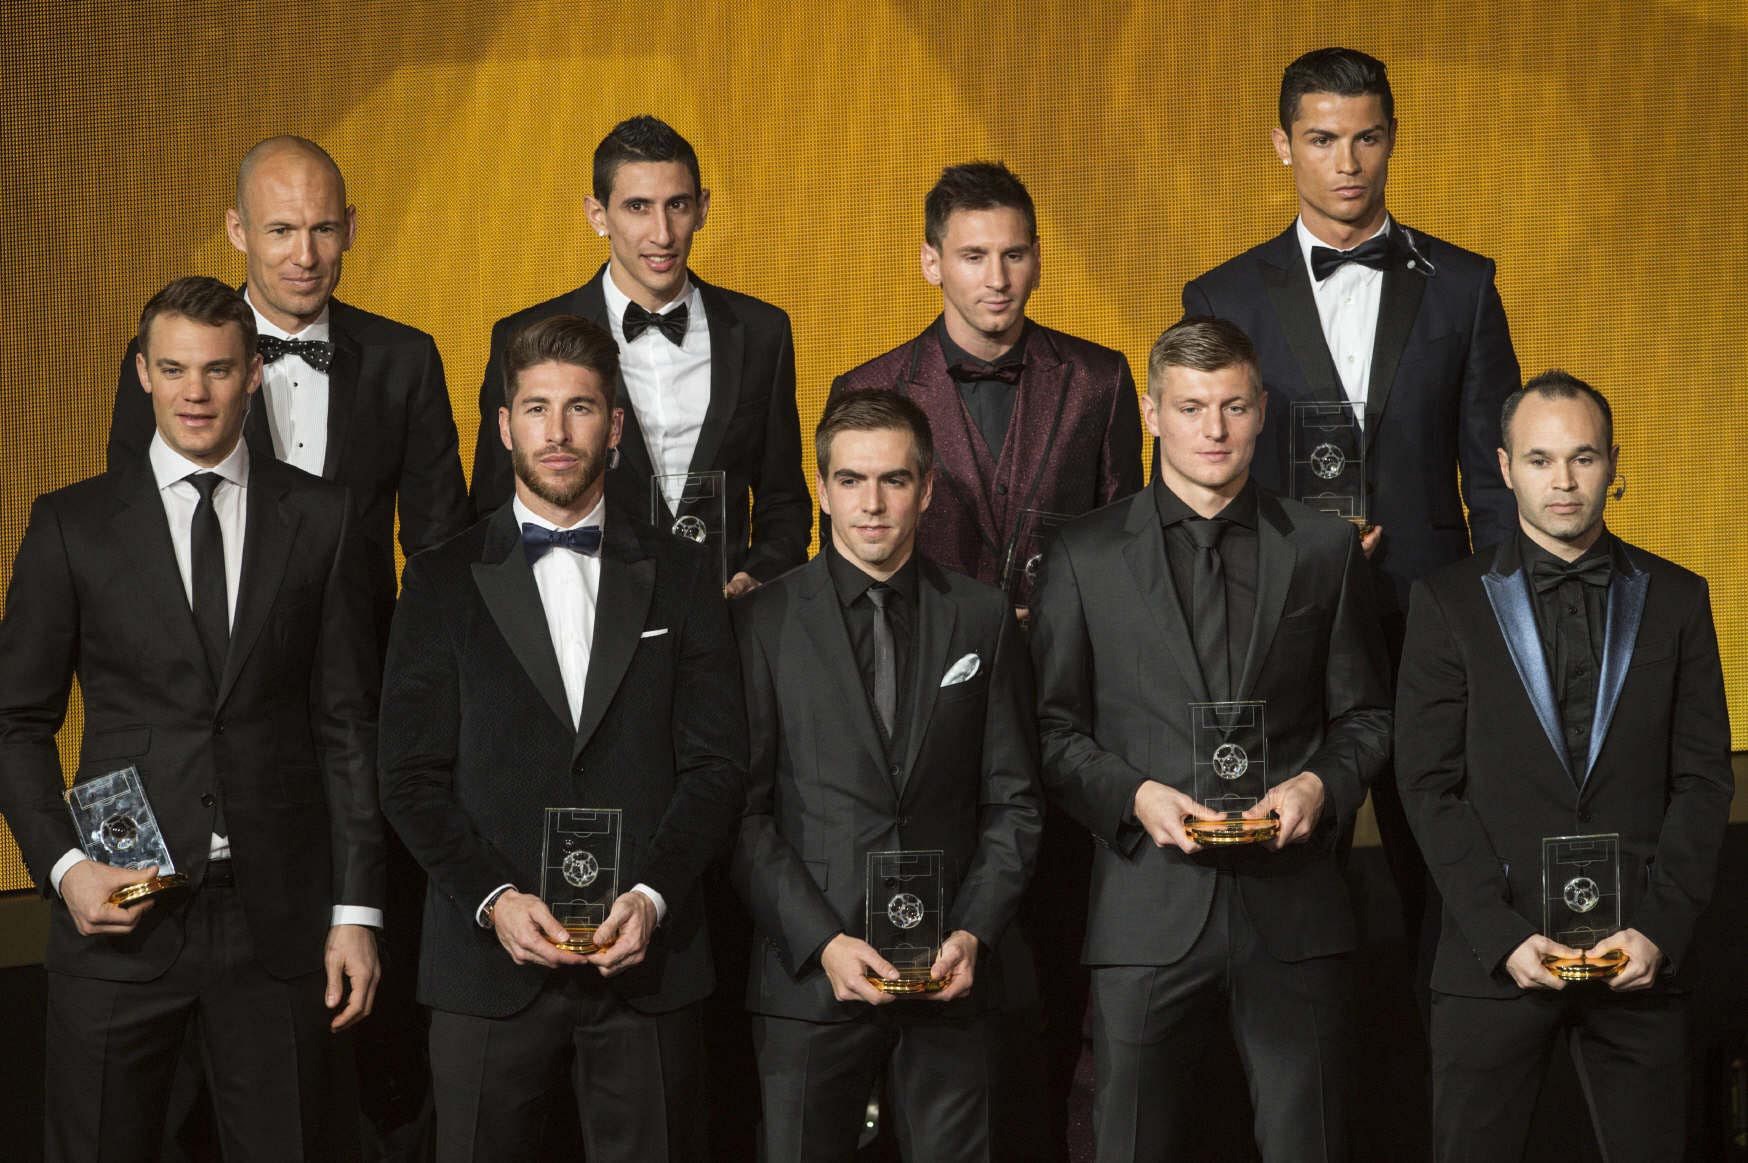 UEFA 40-Man Team of the Year Shortlist